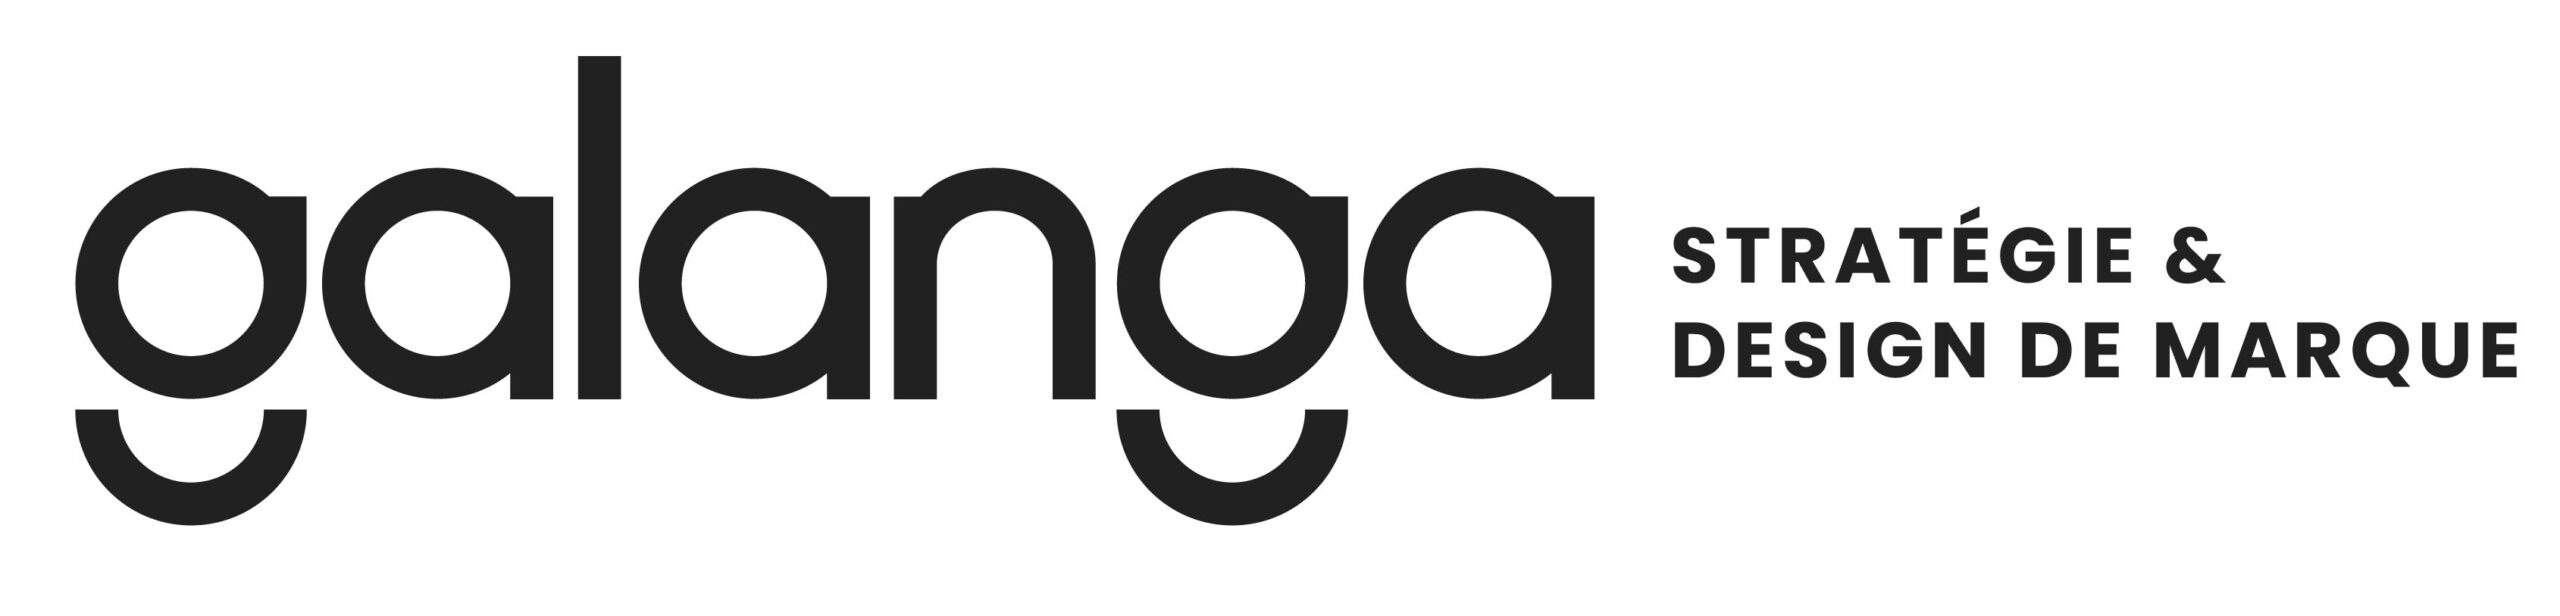 Galanga logo